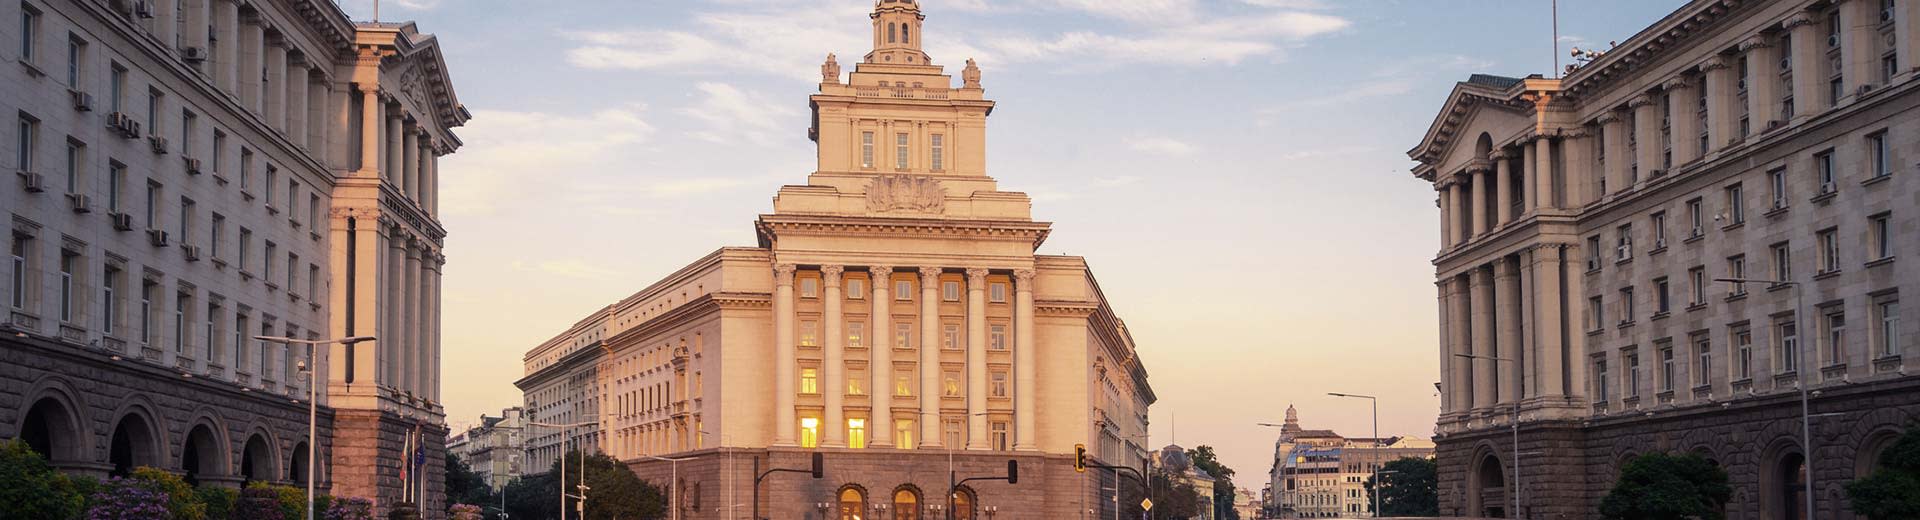 Une belle et historique de la place de la ville à Sofia, avec des bâtiments historiques illuminés par le soleil couchant.